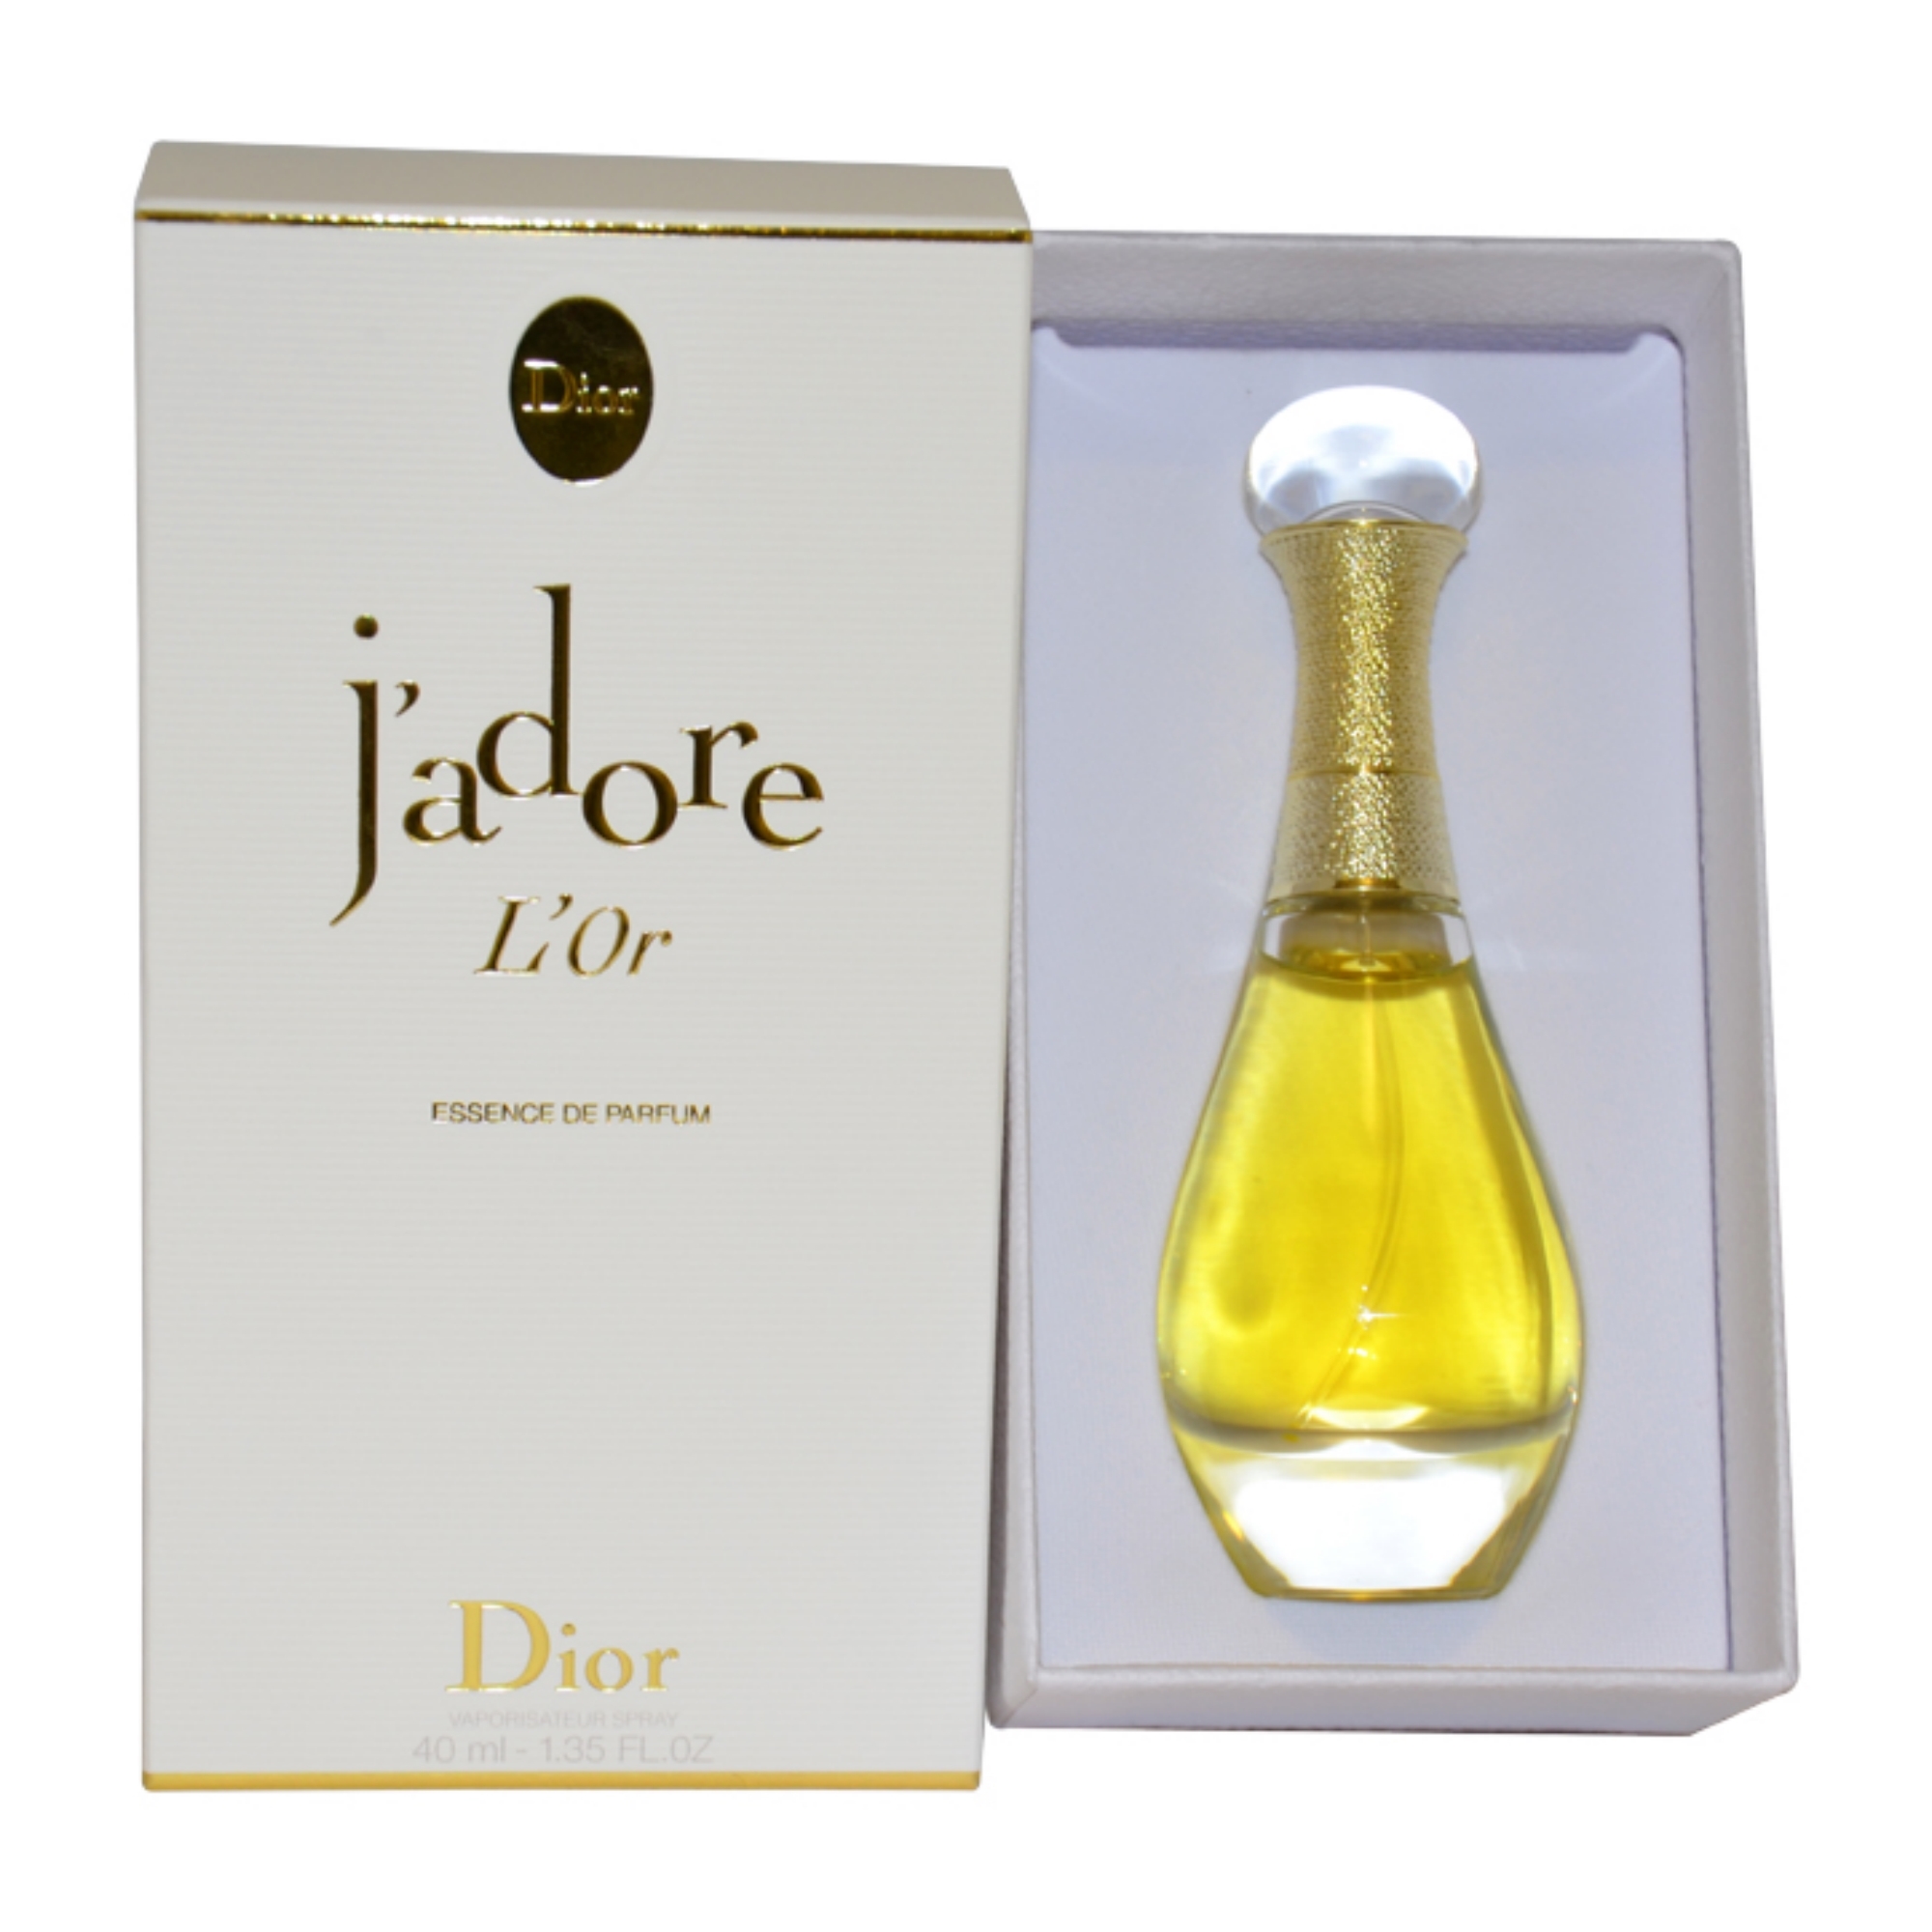 J'adore L'Or by Christian Dior for Women - 1.35 oz Essence De Parfum